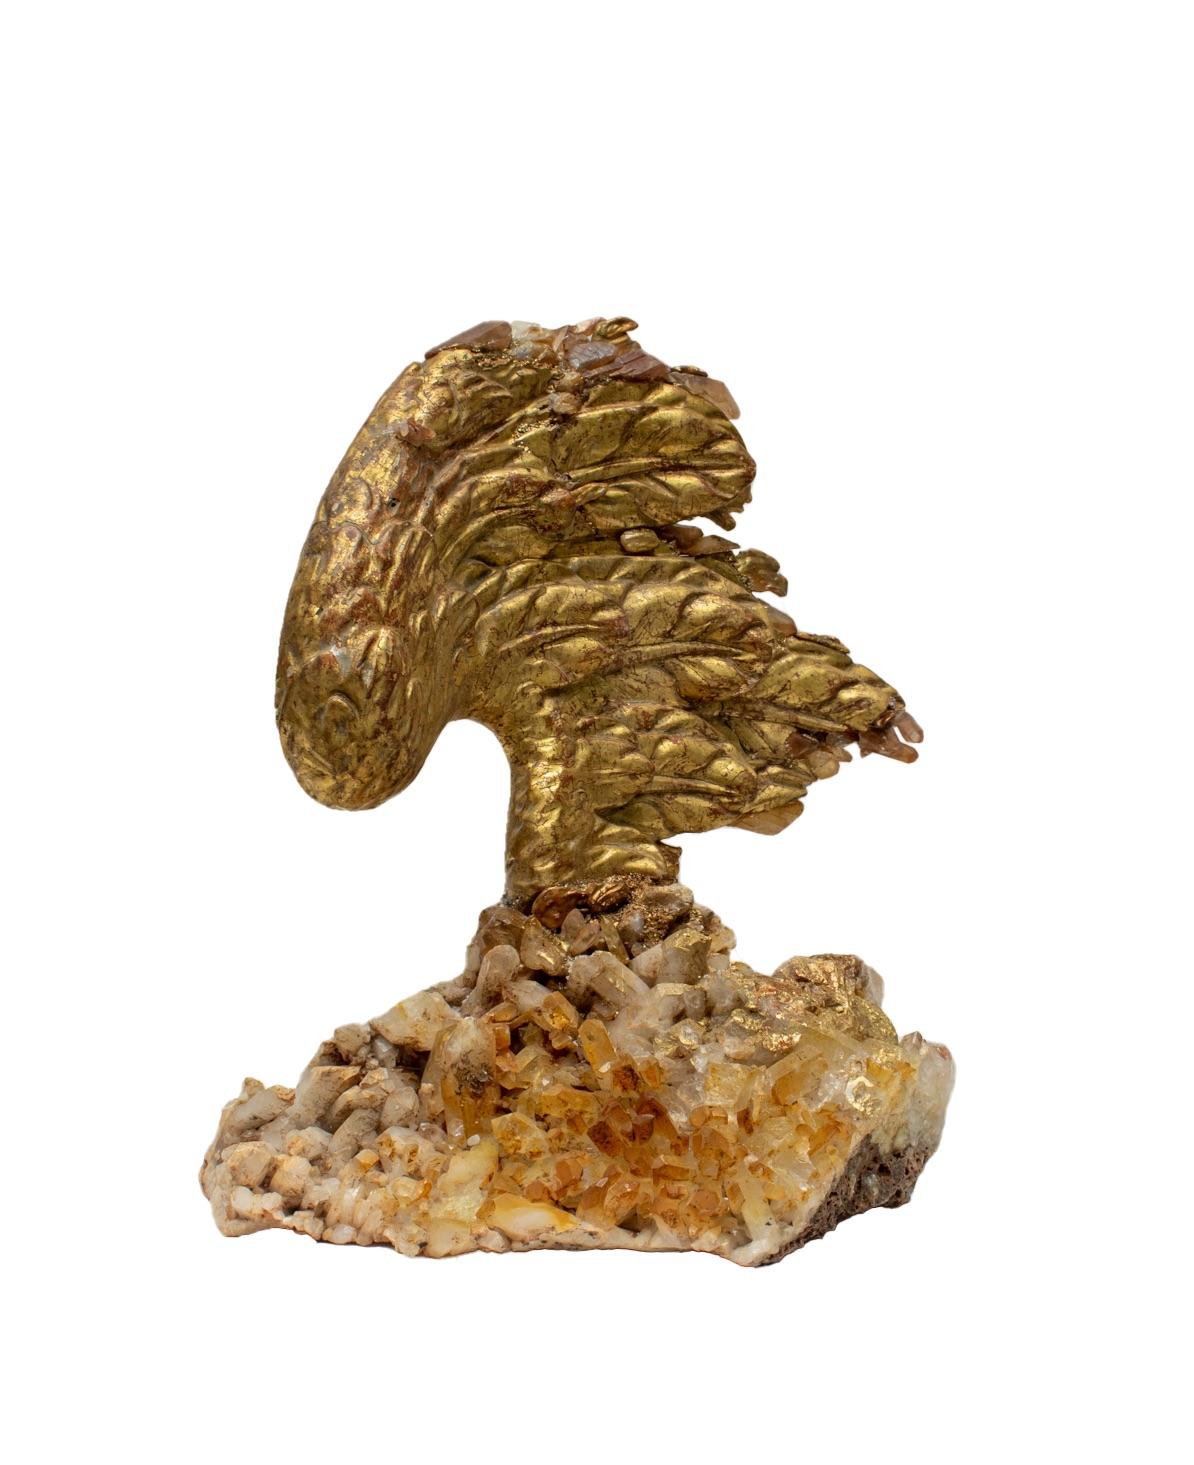 aile d'ange en feuille d'or sculptée à la main en Italie, datant du 18e siècle, sur une grappe de quartz de cristal avec des perles baroques.

L'aile d'ange en feuille d'or sculptée à la main provient d'une église historique de Ligurie. Cette